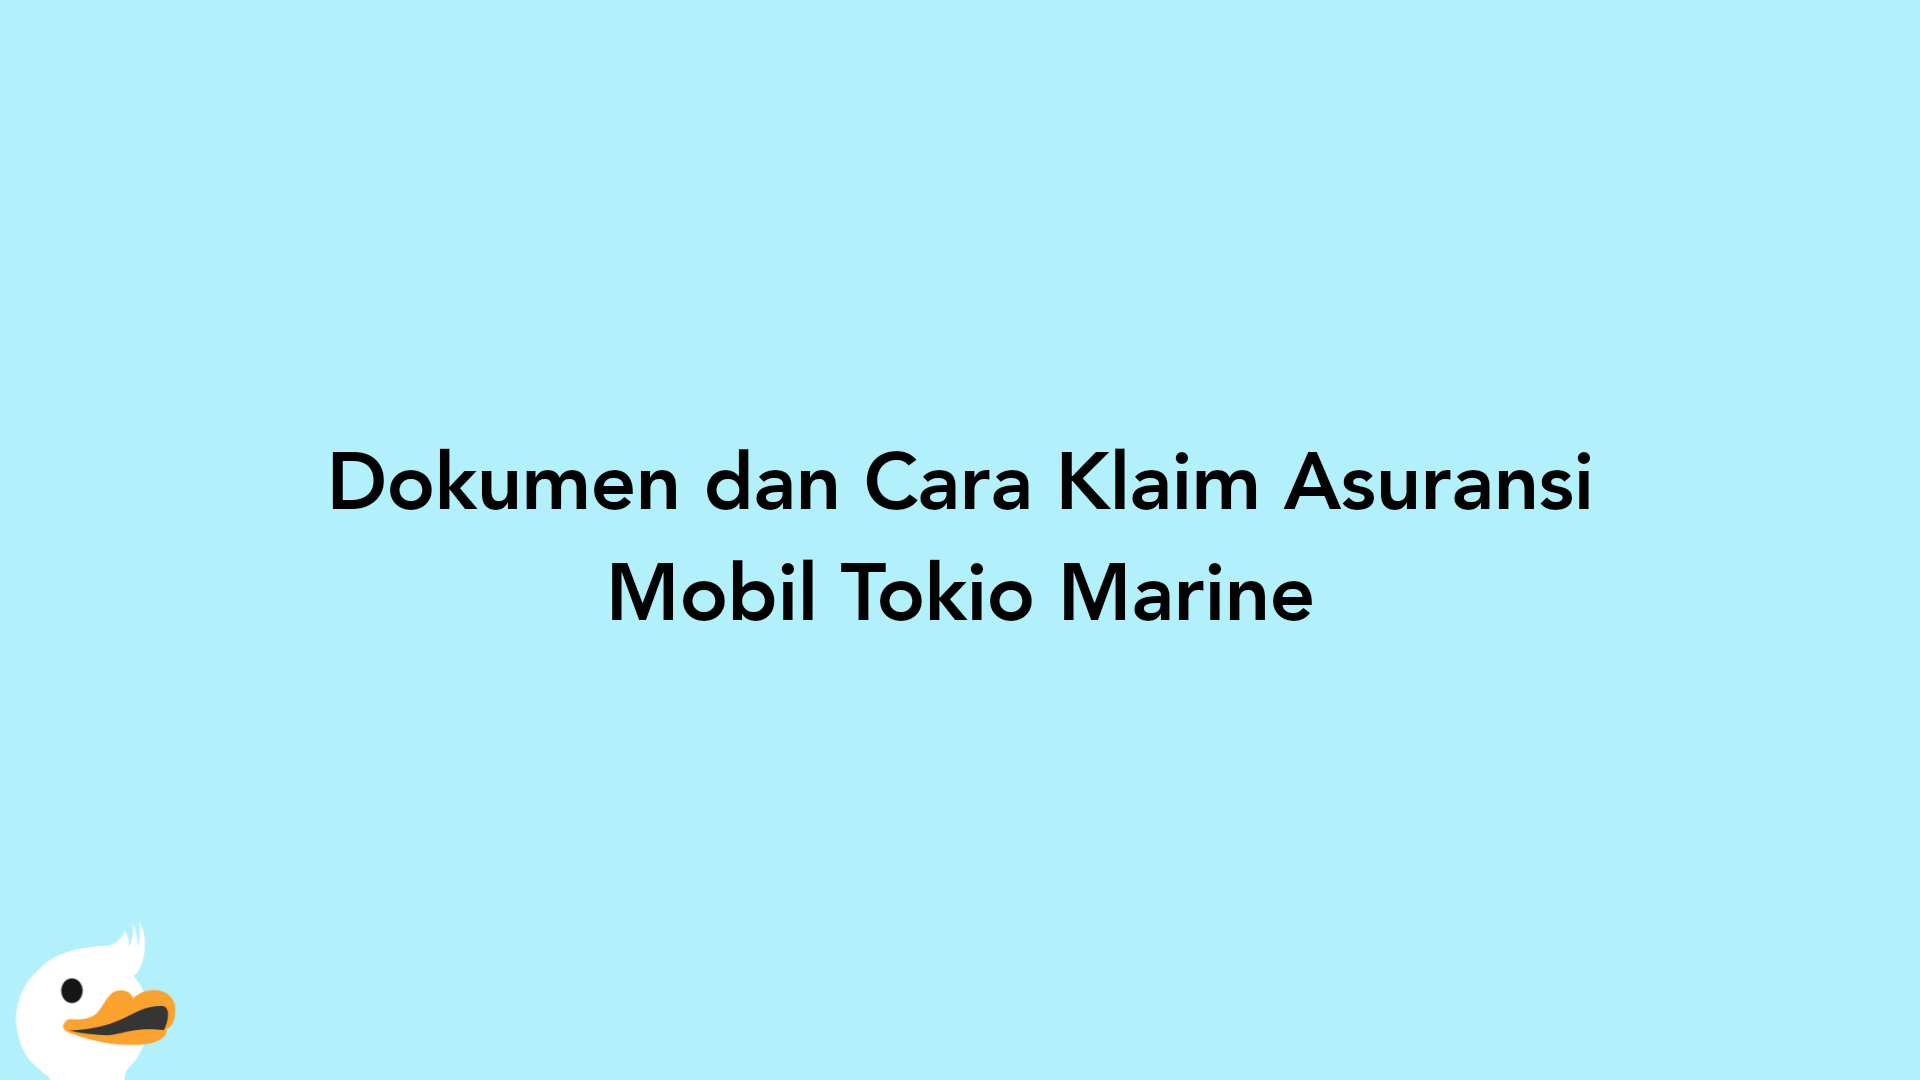 Dokumen dan Cara Klaim Asuransi Mobil Tokio Marine